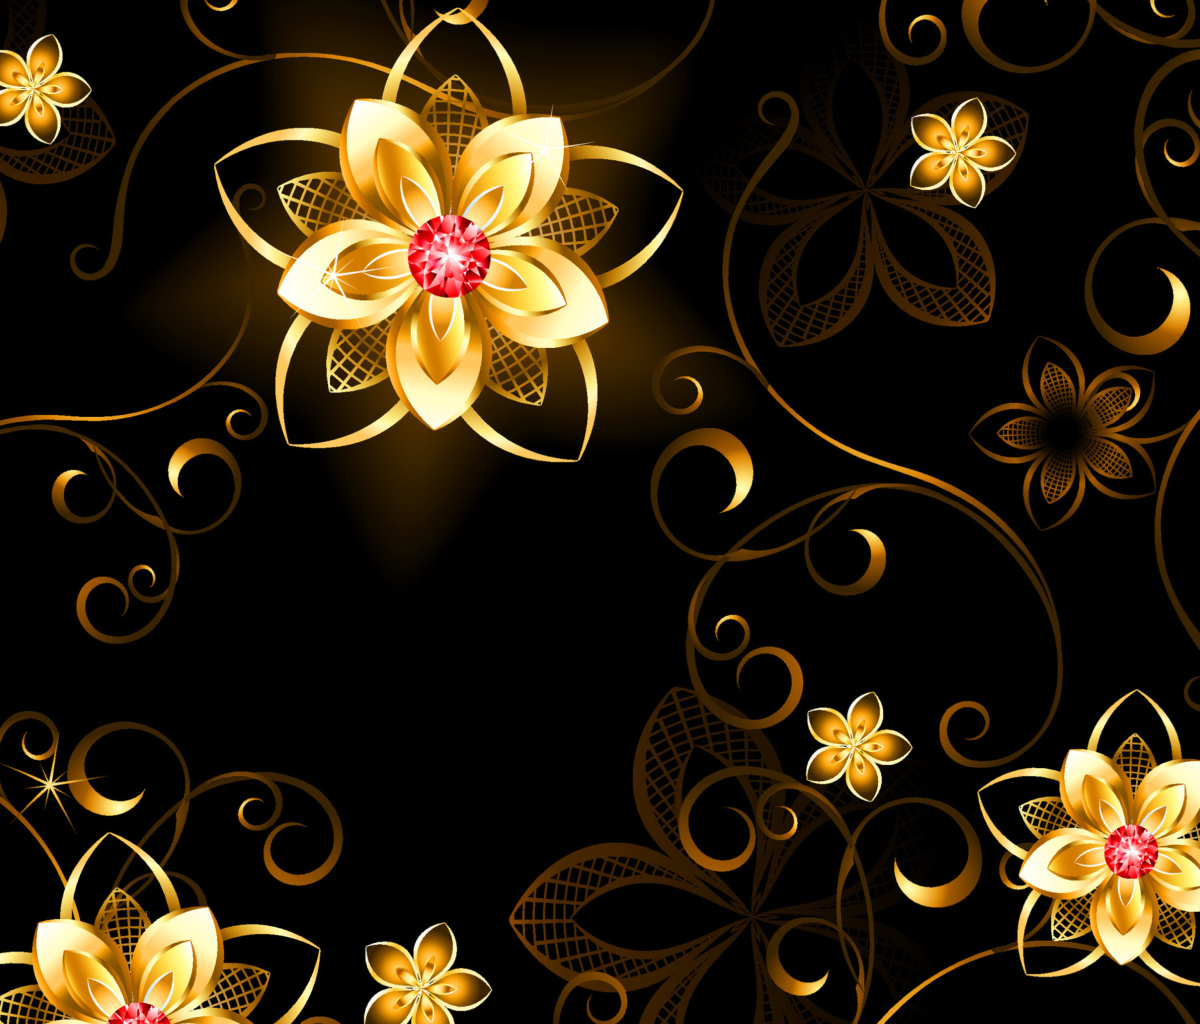 Das Golden Flowers Wallpaper 1200x1024